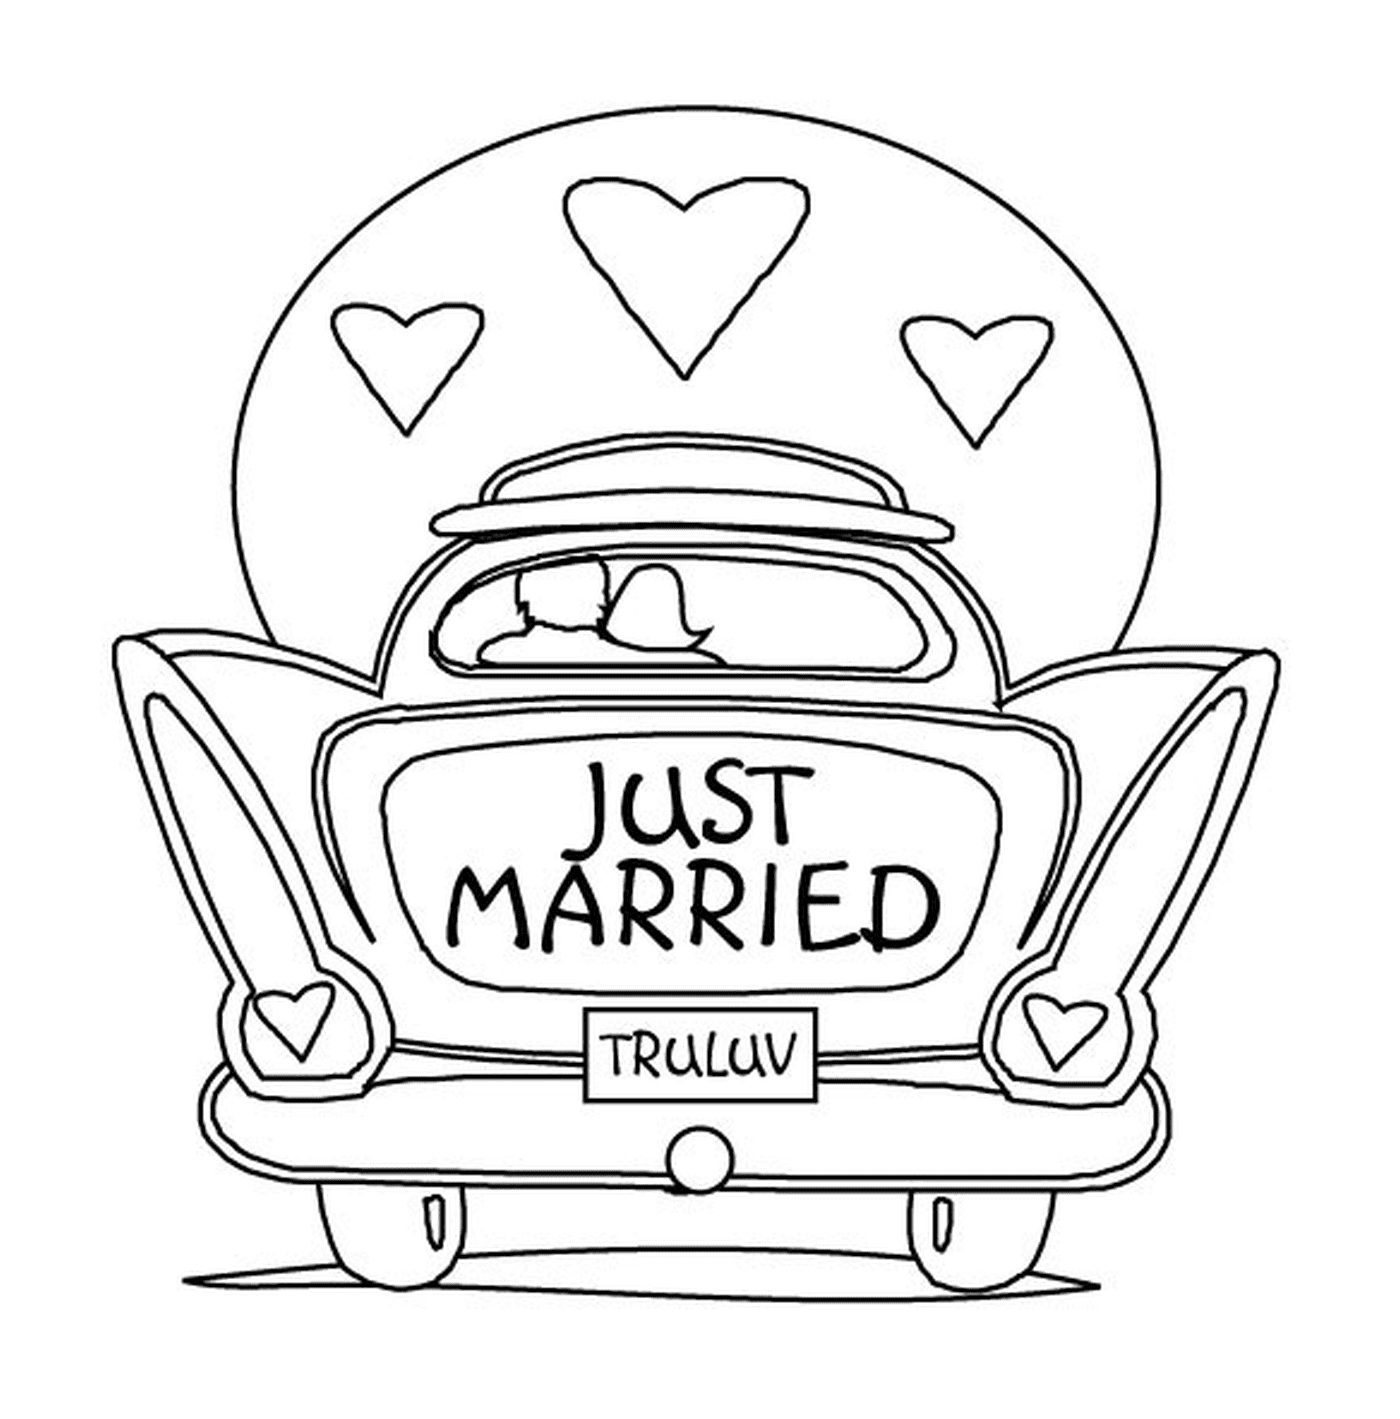  Matrimonio d'auto, appena sposato 